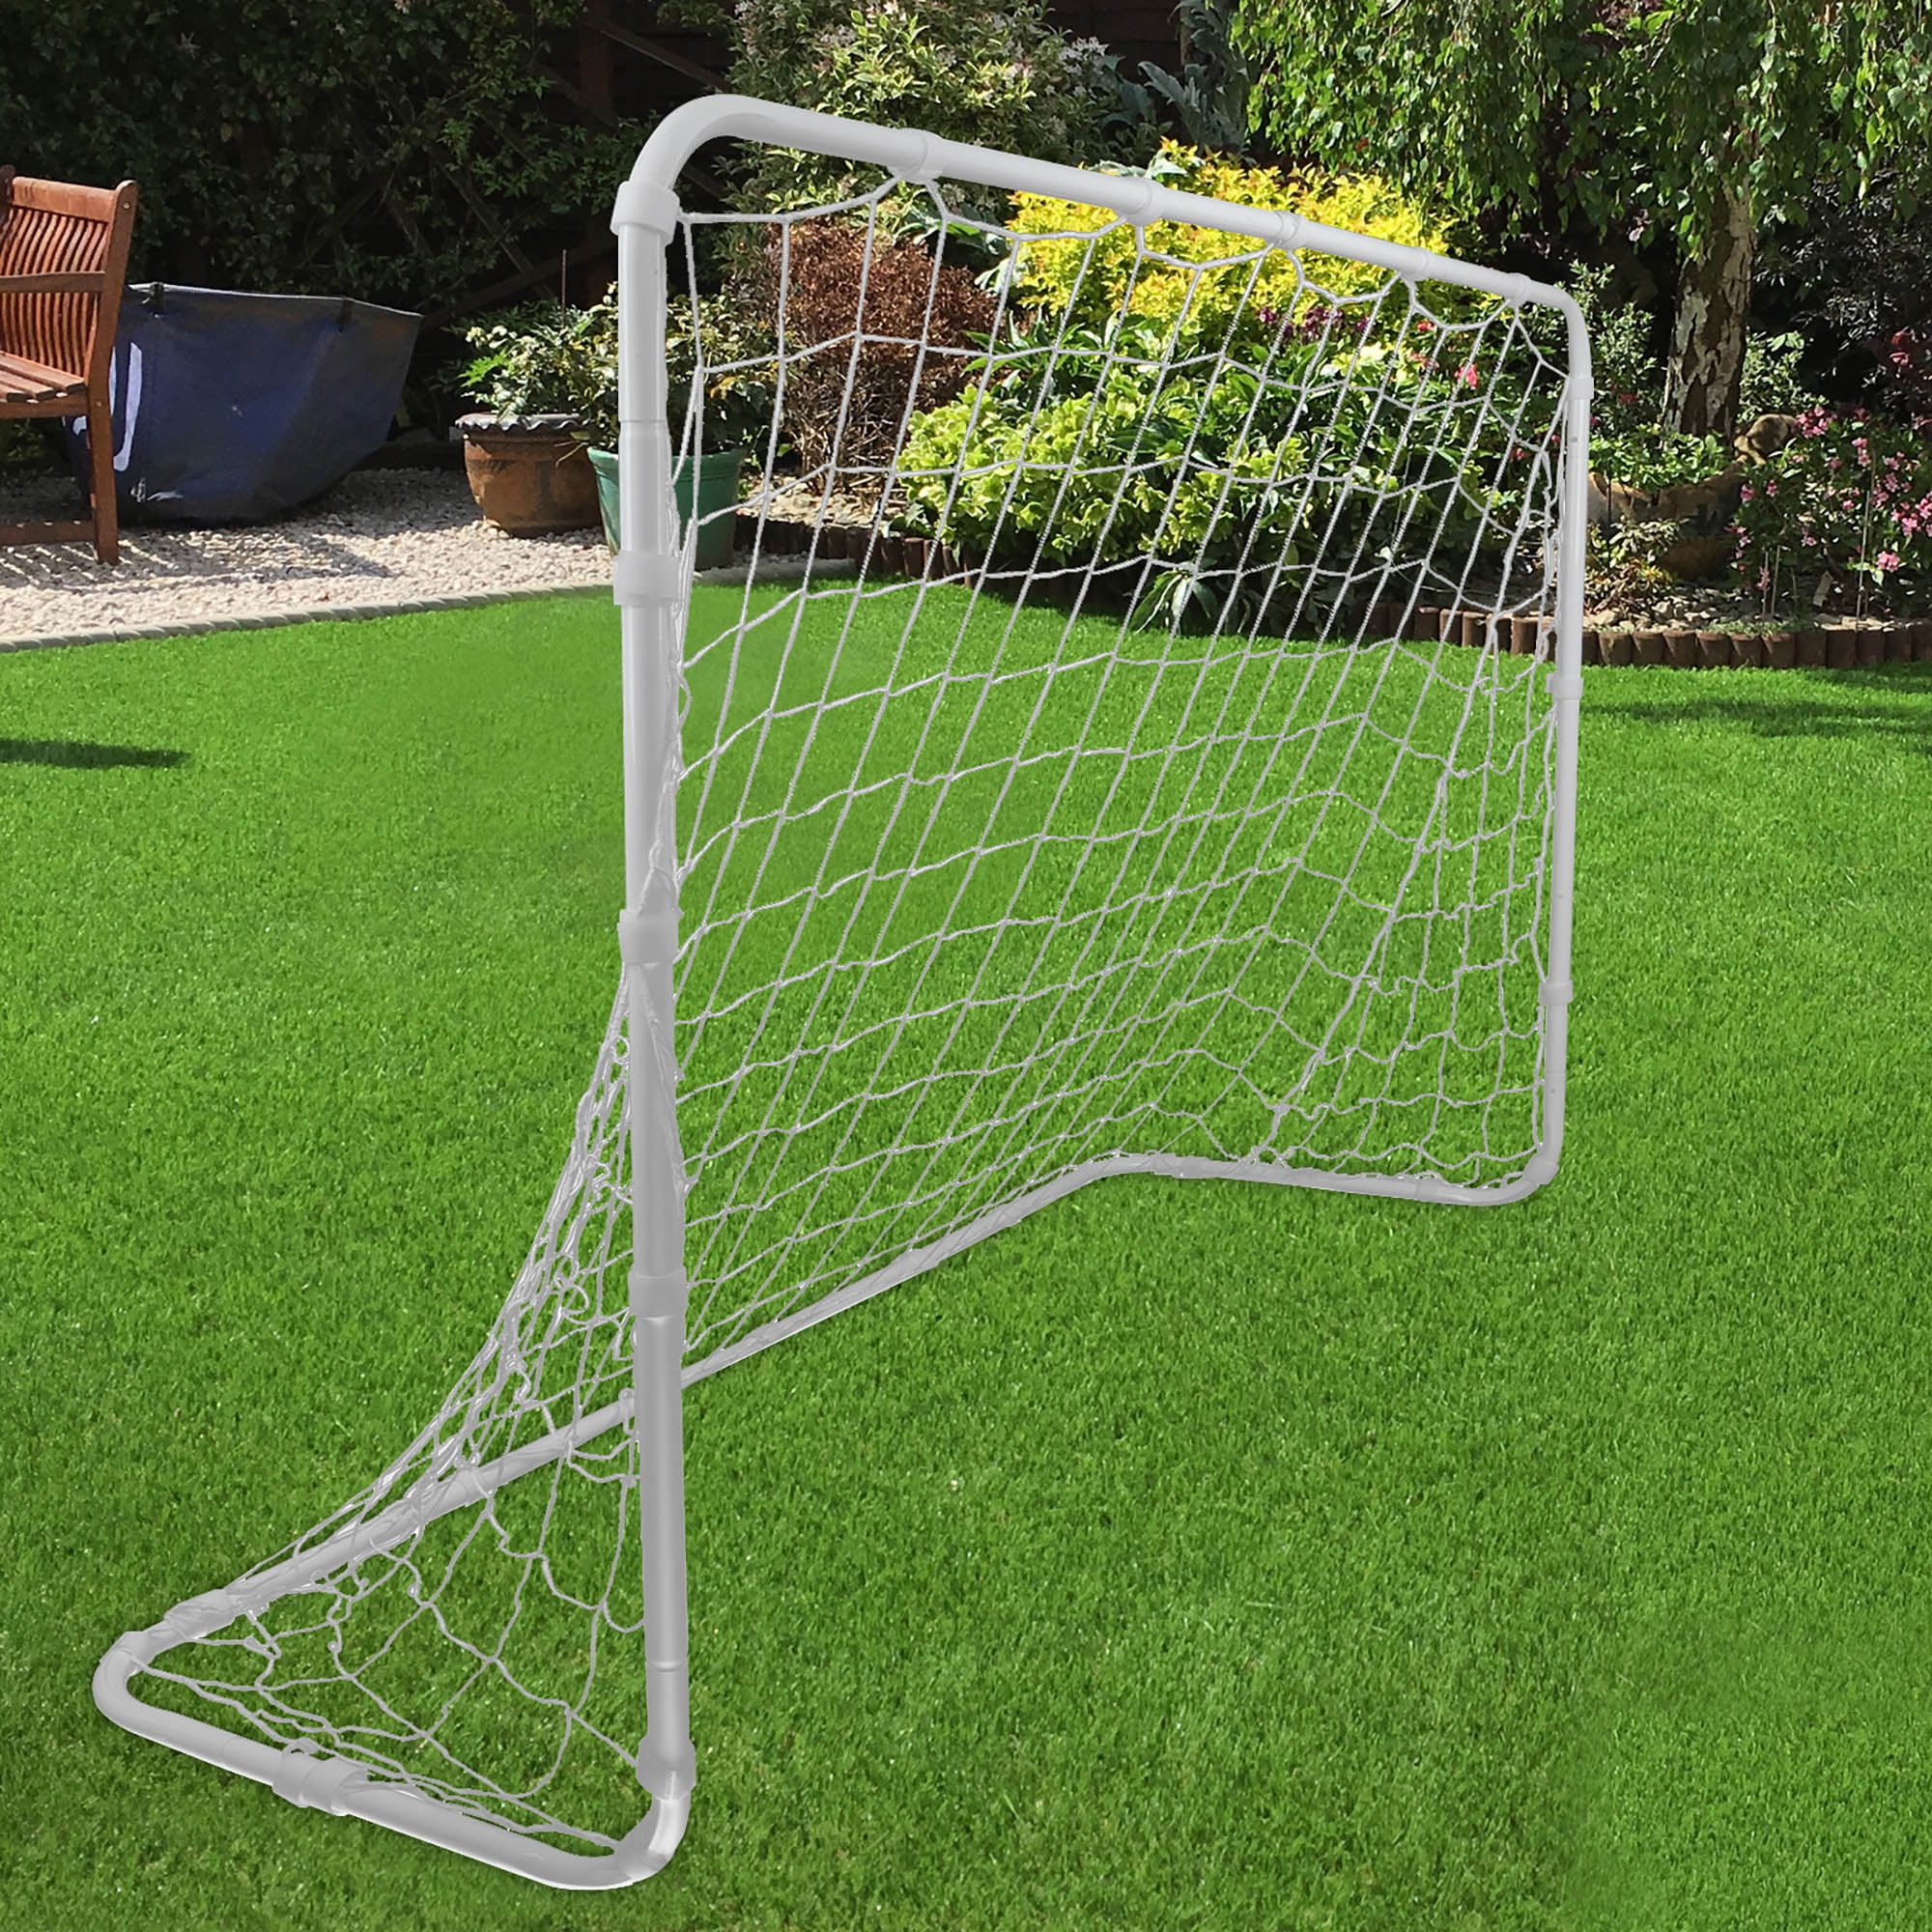 Football Goal Goals Posts Soccer Score play mat Outdoor Sport Training Net 